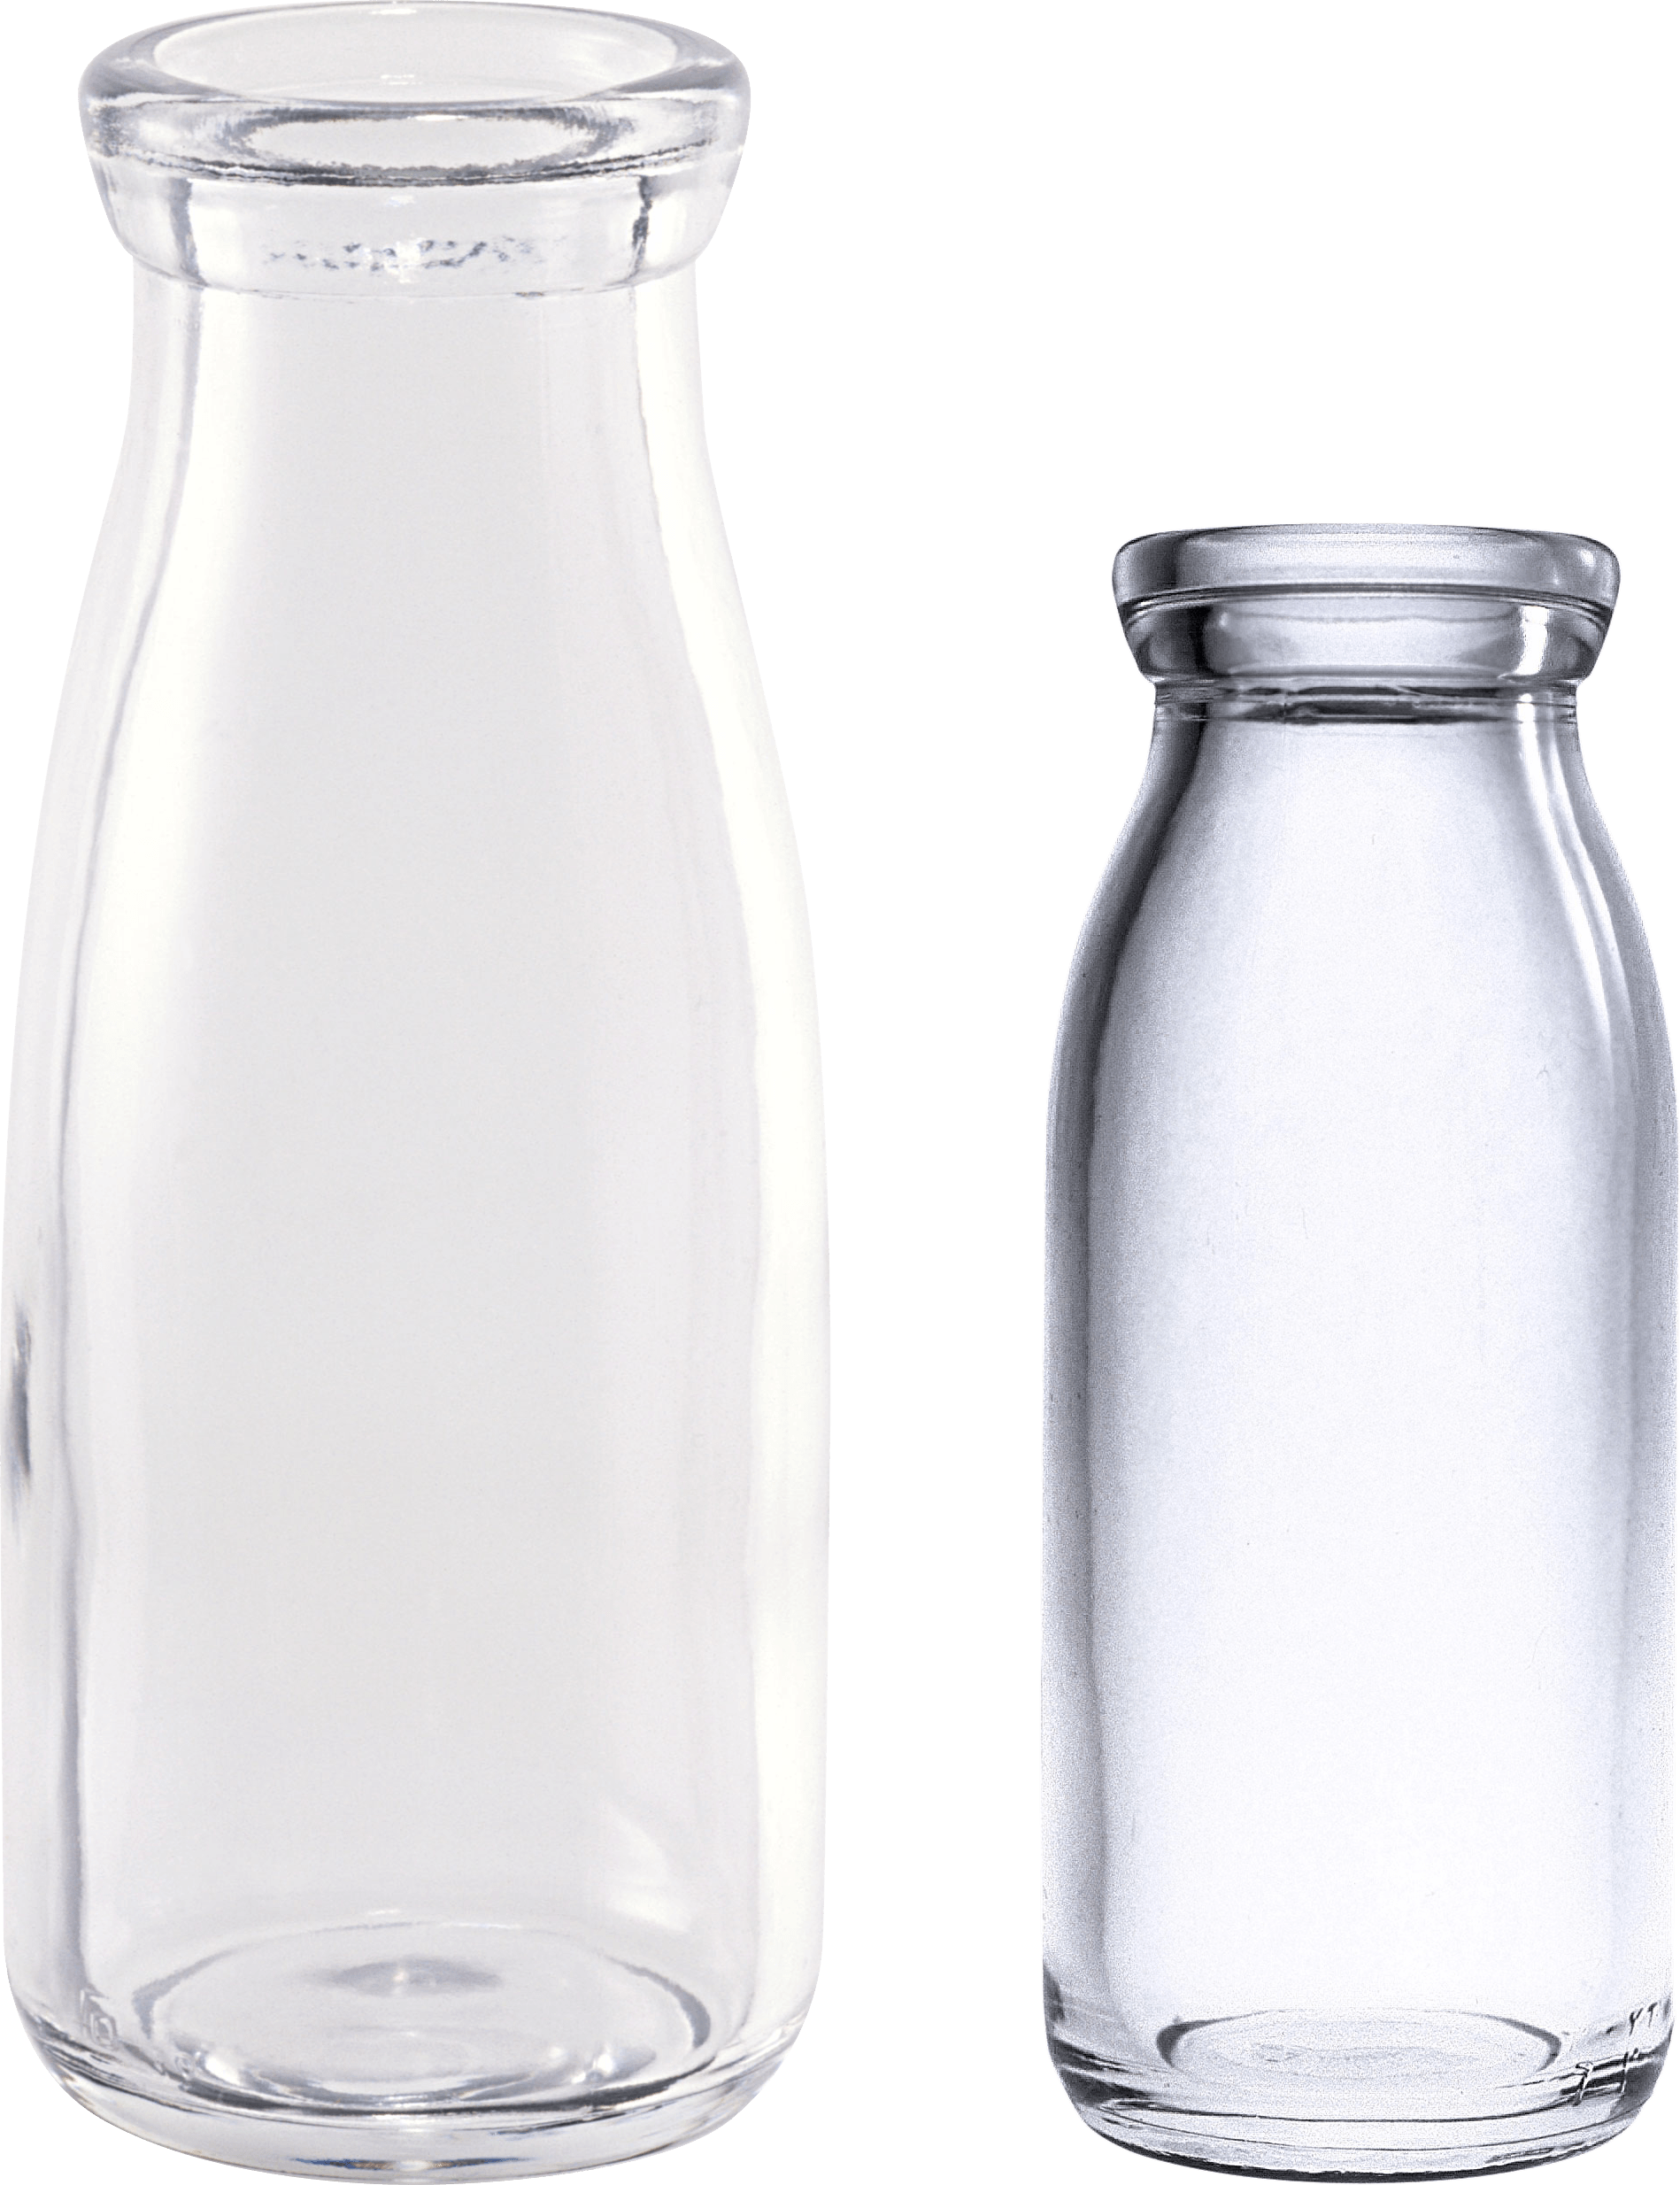 Botol Jar Kaca Translucent PNG Gambar